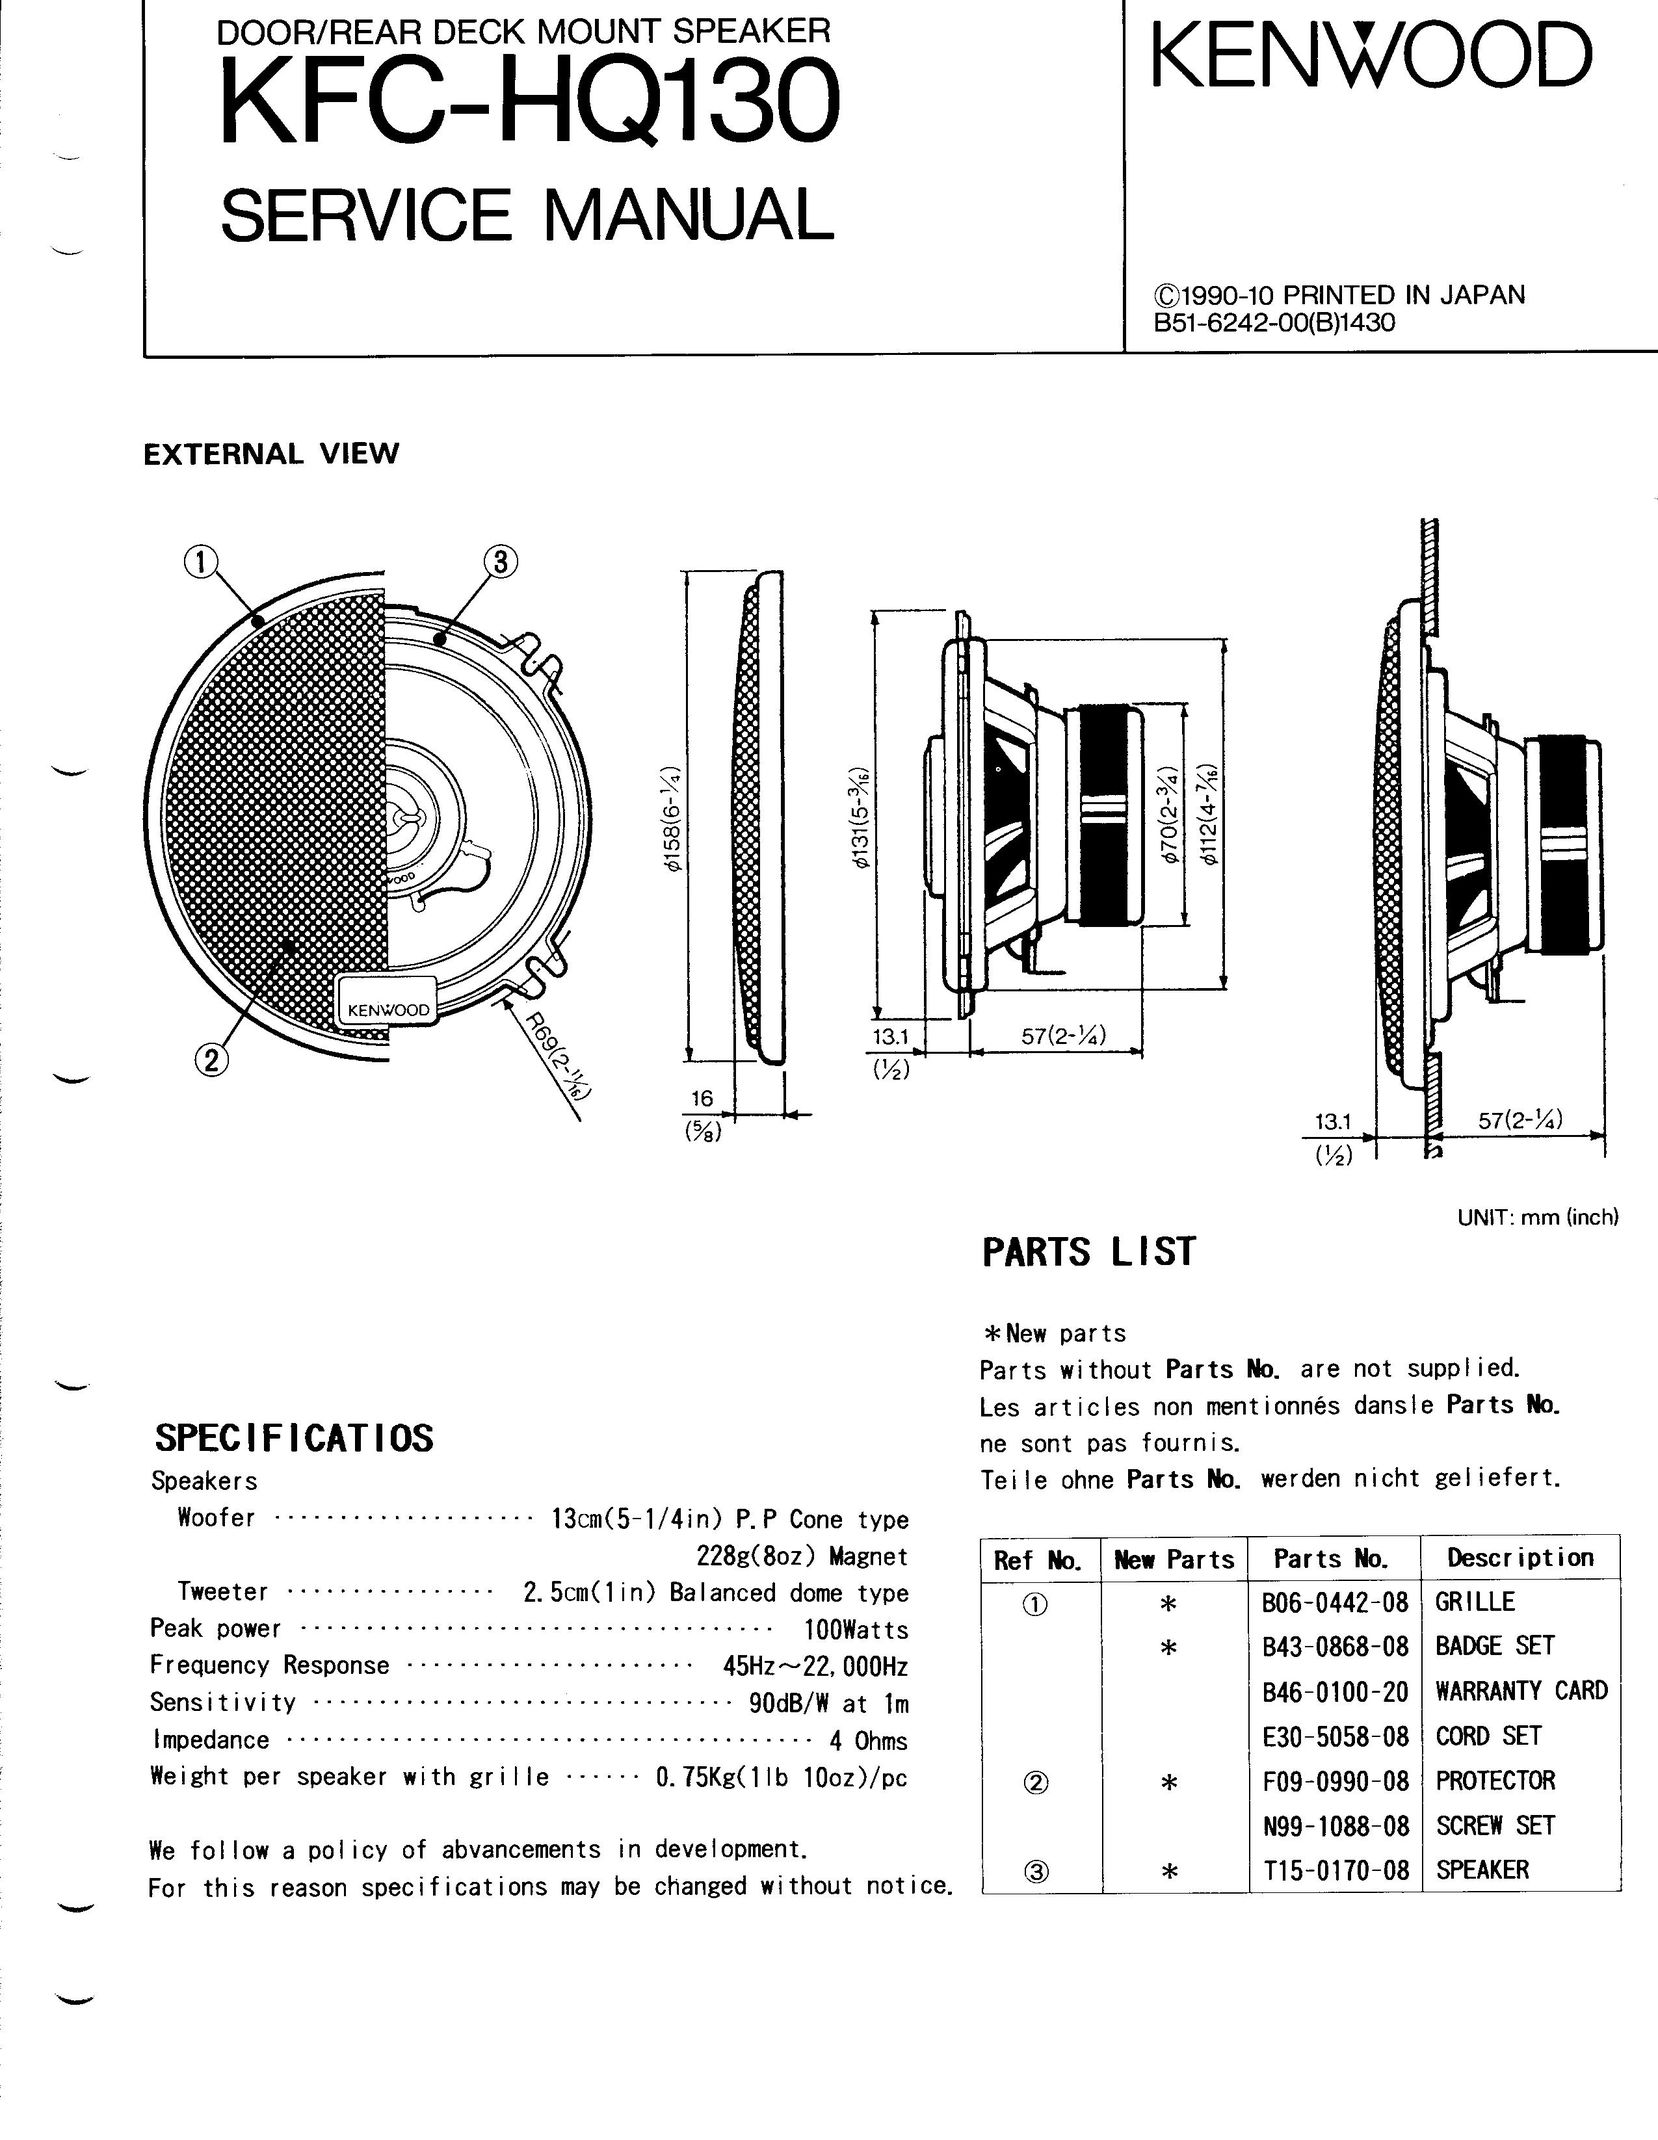 Kenwood KFC-HQ130 Car Speaker User Manual